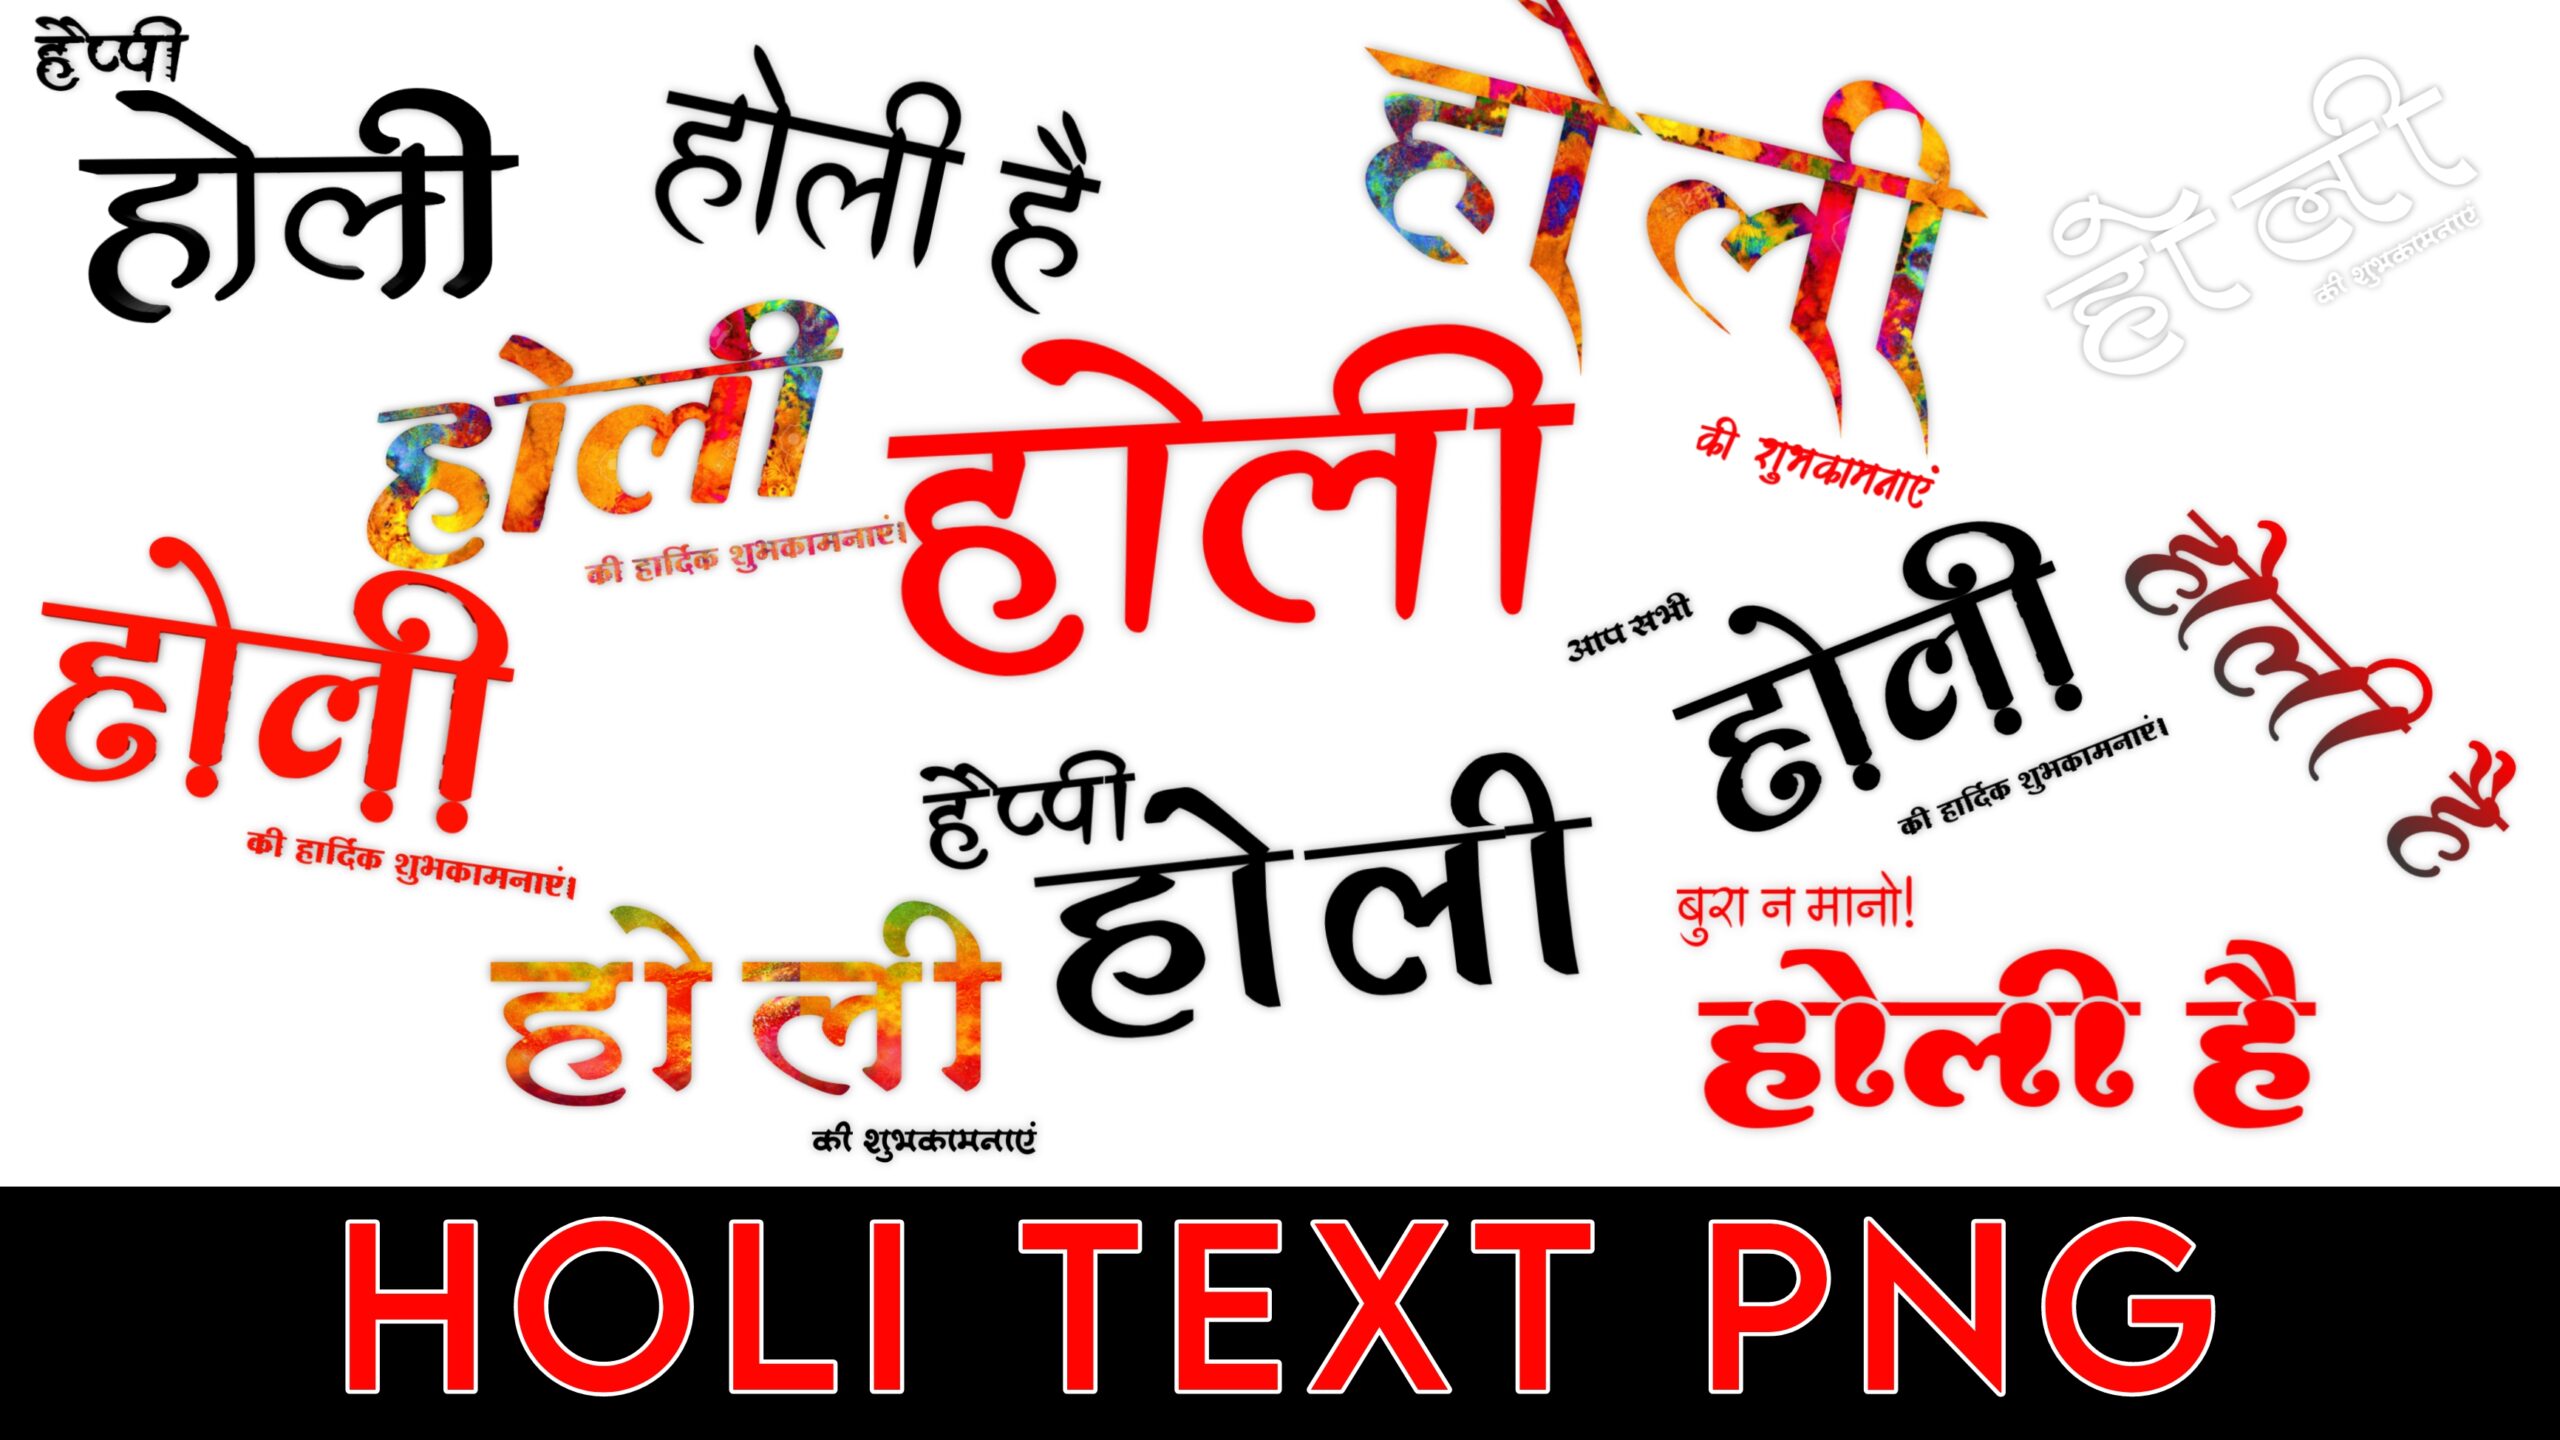 Holi text png images | Holi hindi text png free